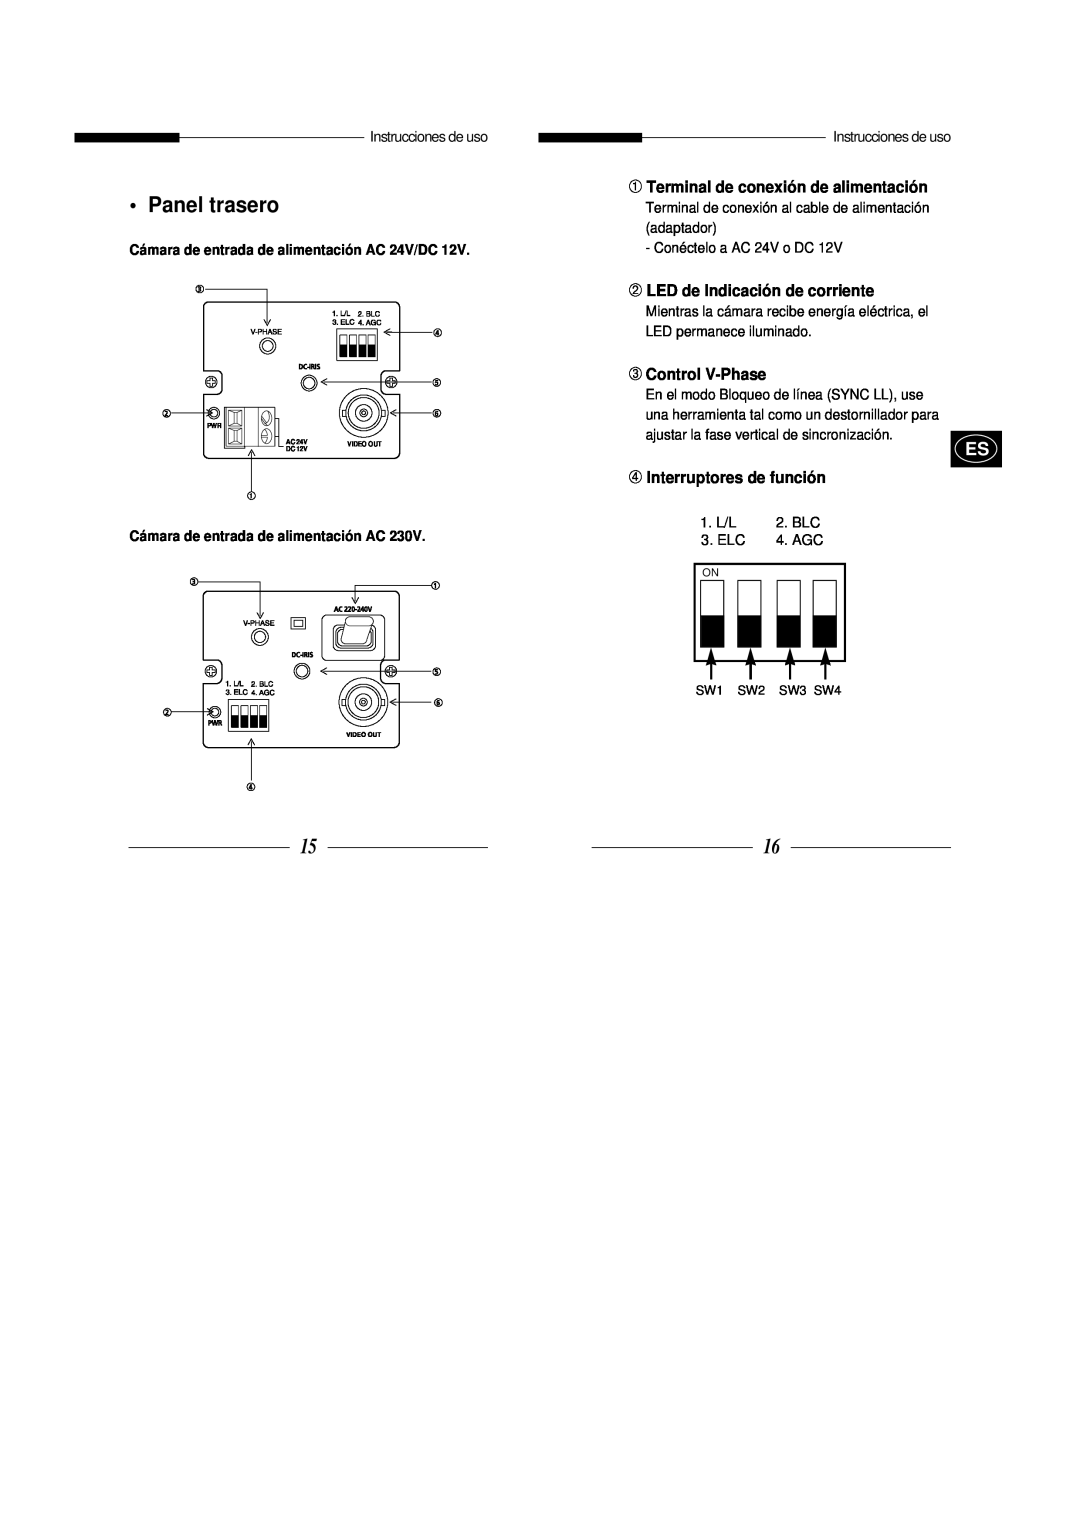 Samsung SBC-301AP manual Panel trasero, ➀ Terminal de conexión de alimentación, ➁ LED de Indicación de corriente, Video Out 